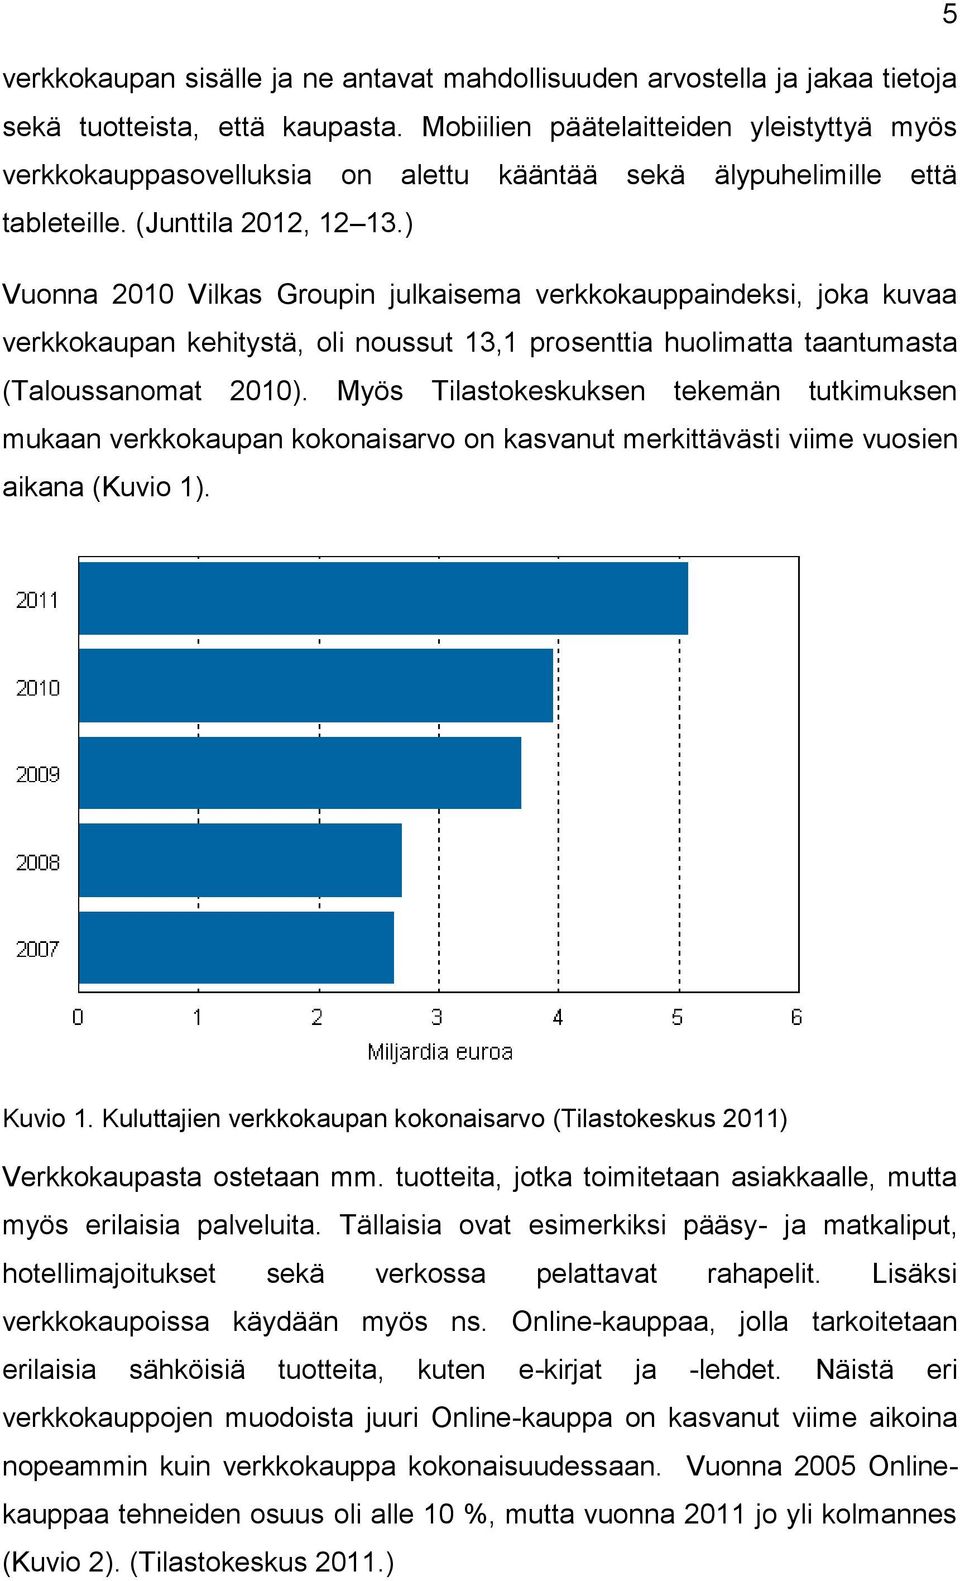 ) Vuonna 2010 Vilkas Groupin julkaisema verkkokauppaindeksi, joka kuvaa verkkokaupan kehitystä, oli noussut 13,1 prosenttia huolimatta taantumasta (Taloussanomat 2010).